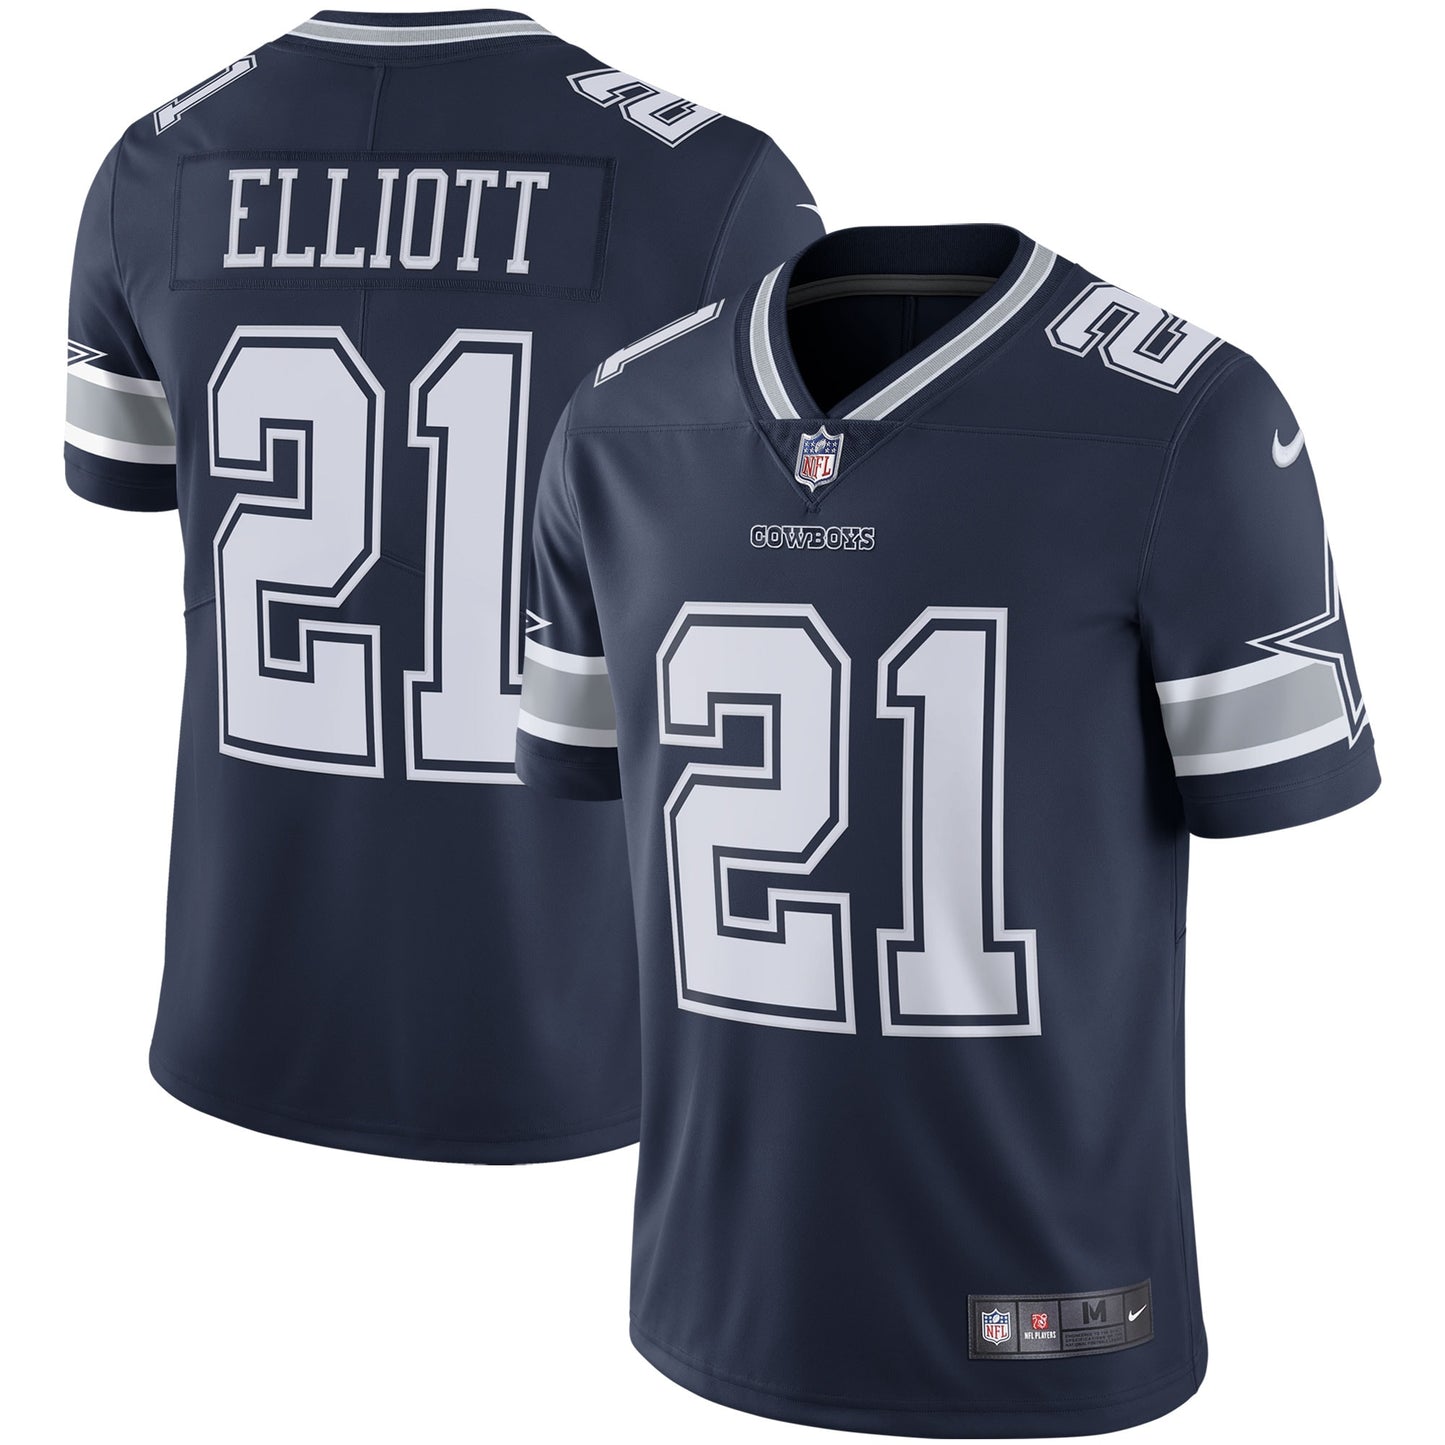 Ezekiel Elliott Dallas Cowboys Nike Vapor Limited Jersey - Navy